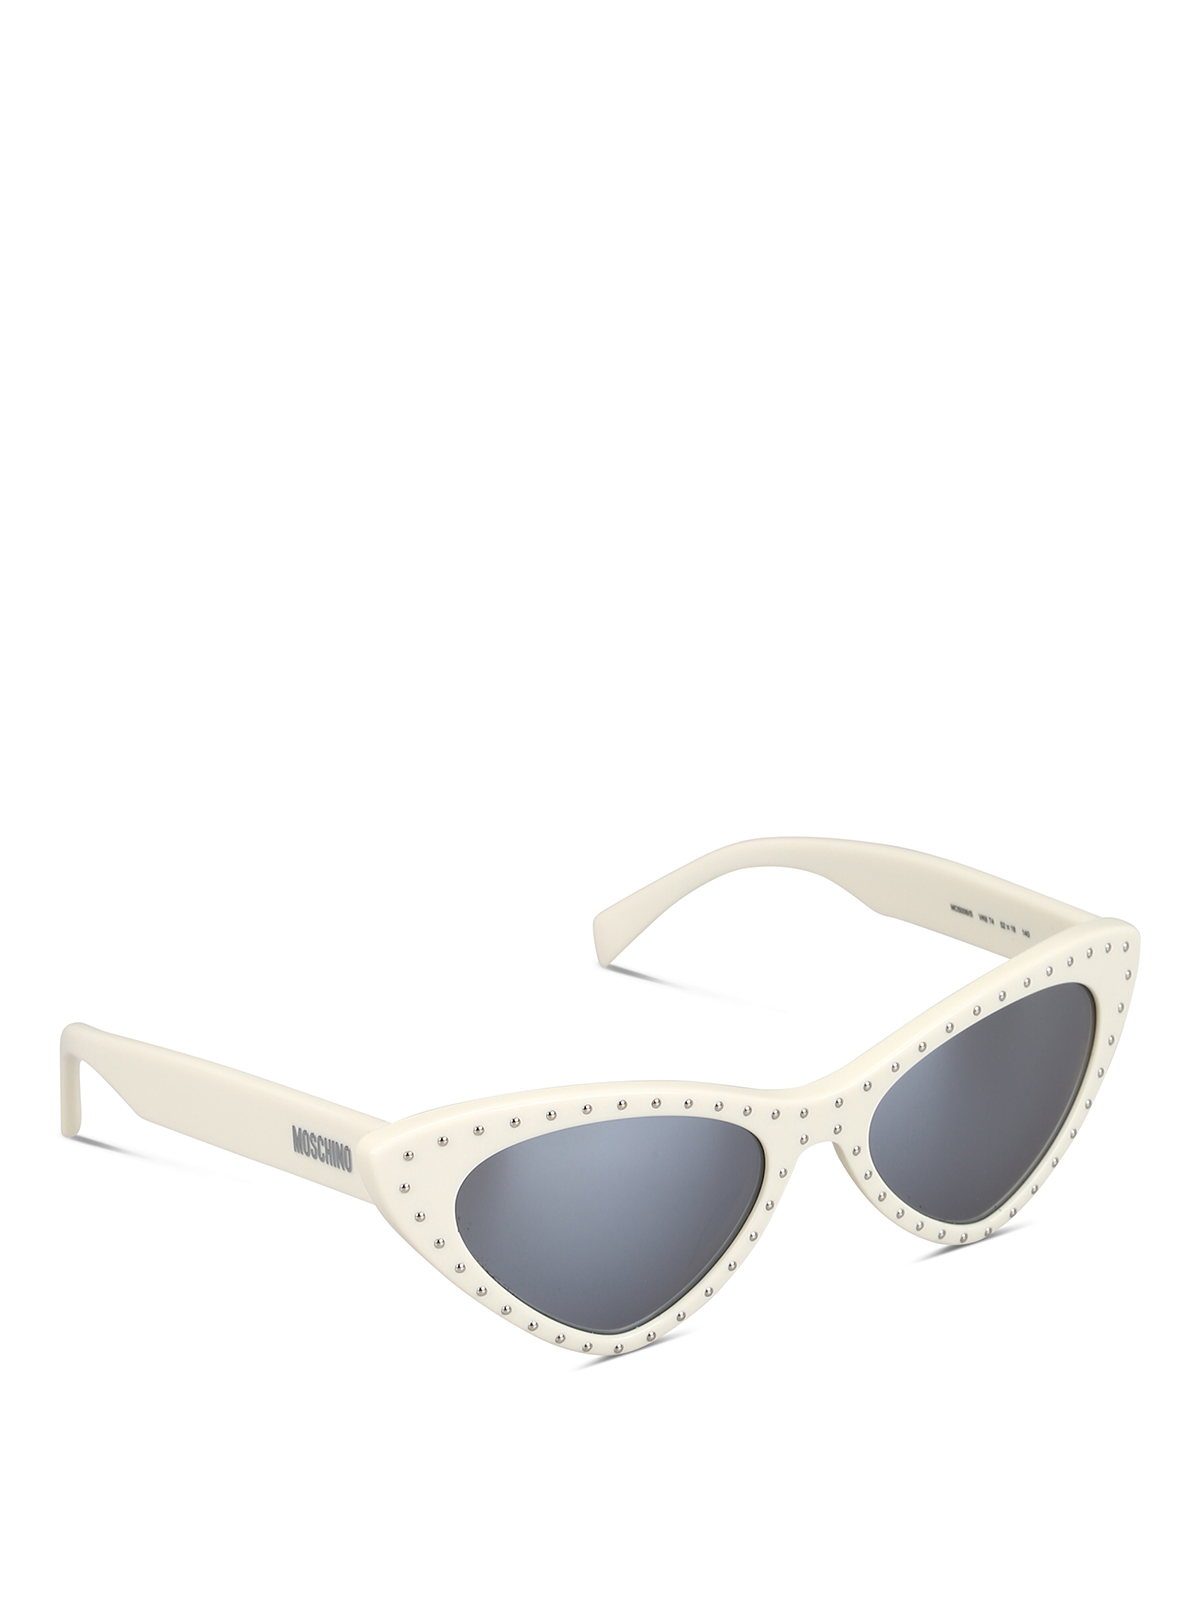 moschino cat eye sunglasses